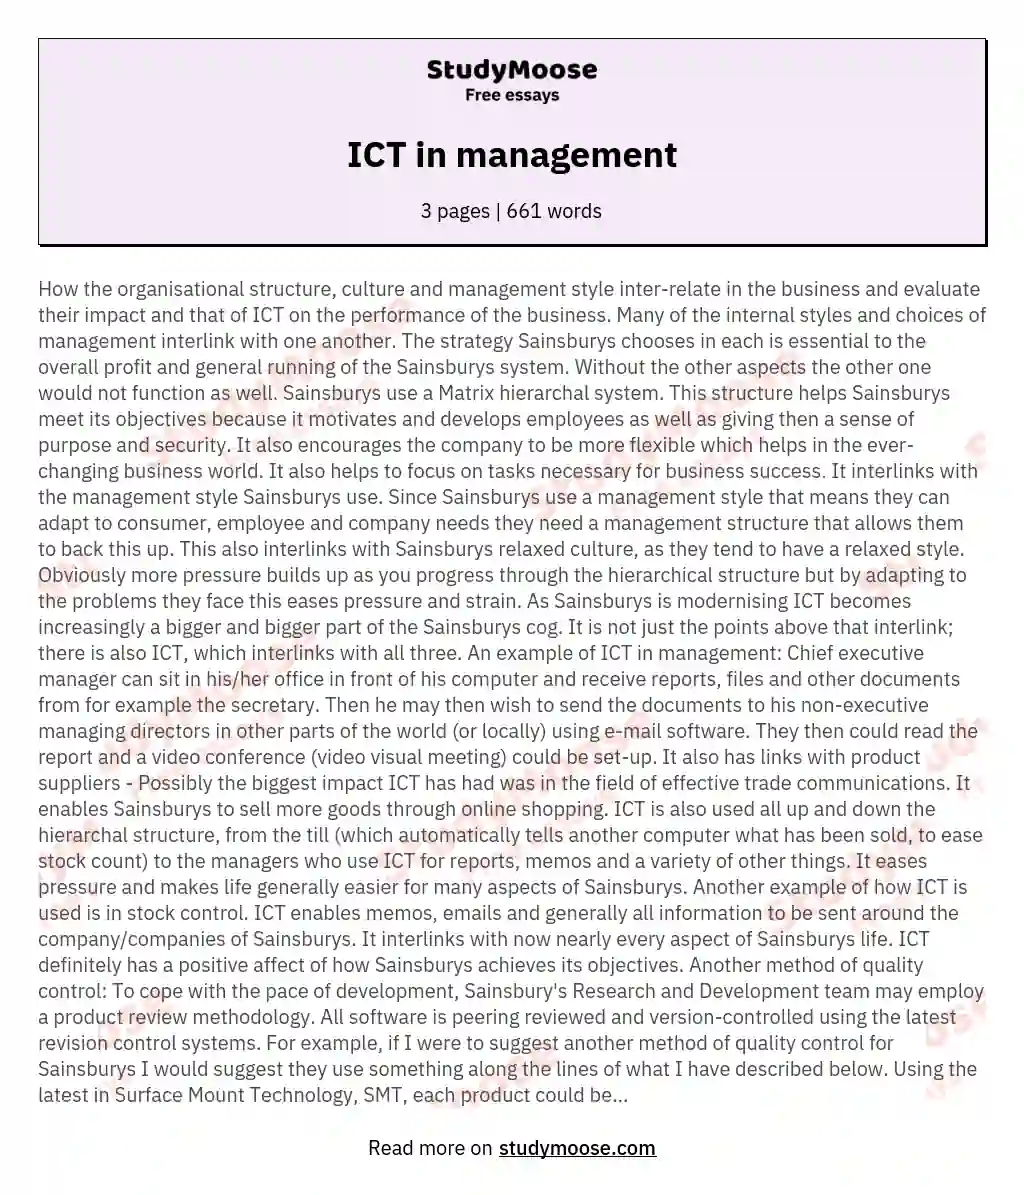 ICT in management essay